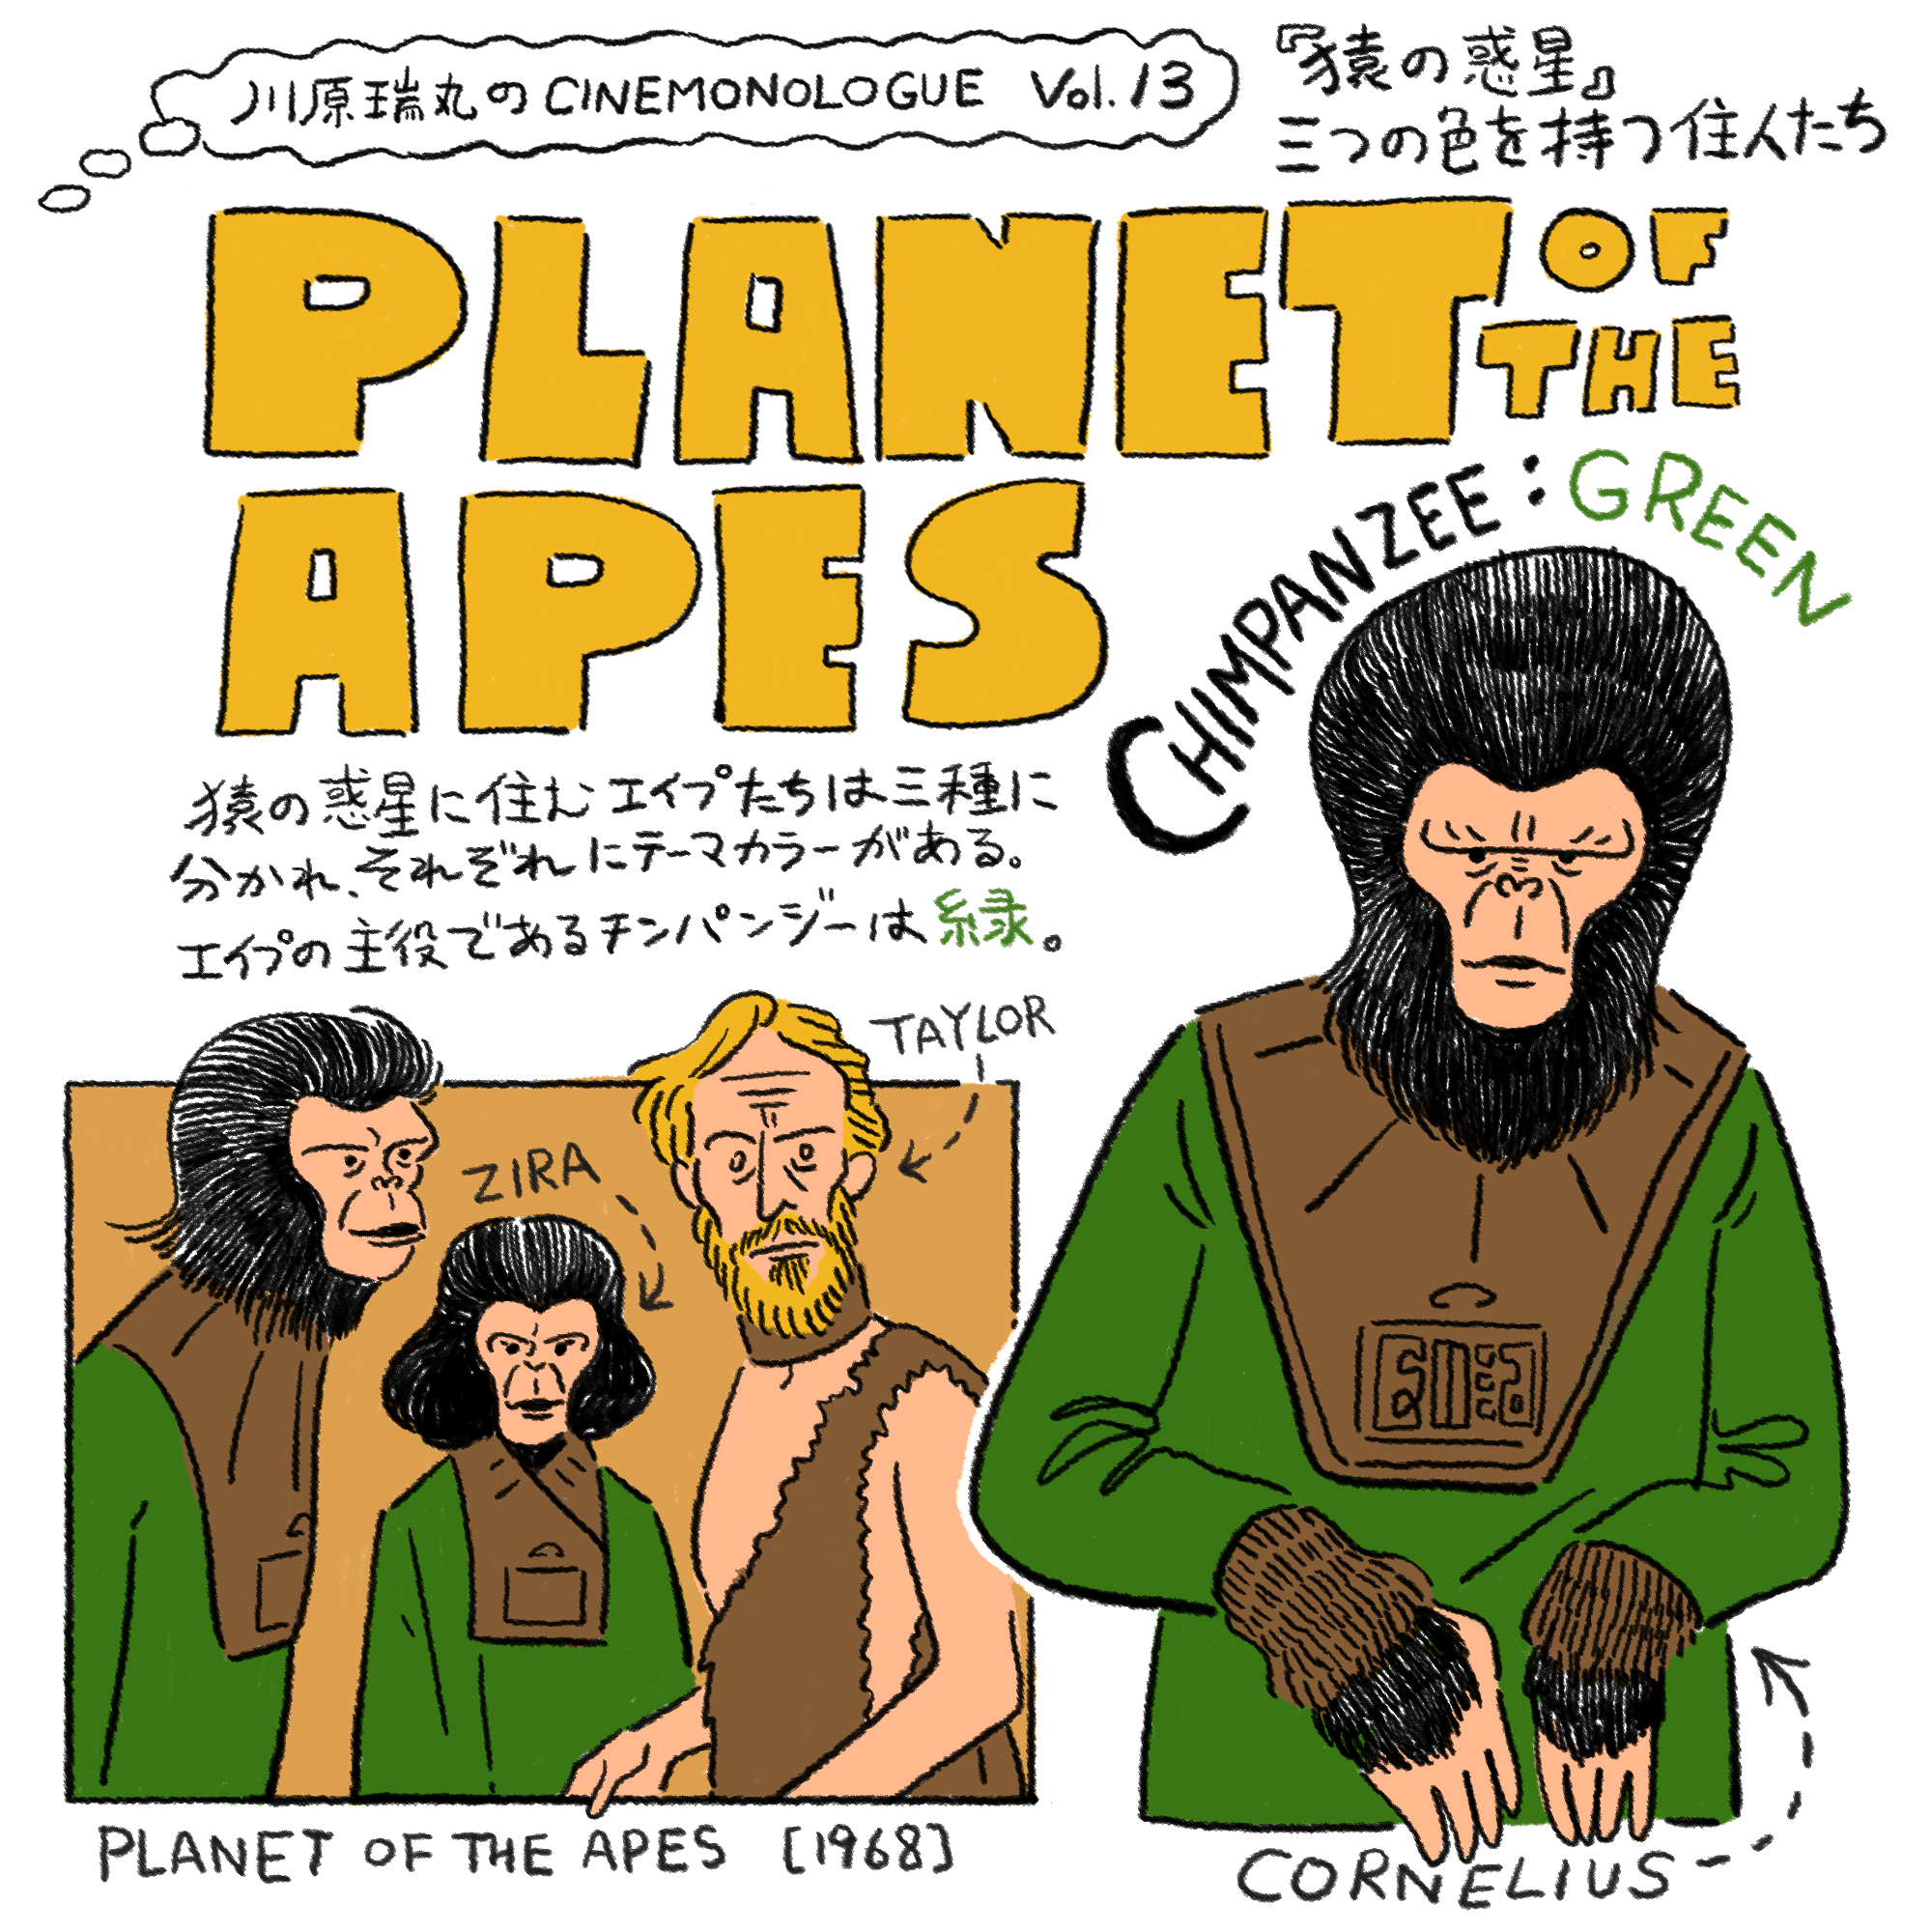 『猿の惑星』三つの色を持つ住人たち【川原瑞丸のCINEMONOLOGUE Vol.13】